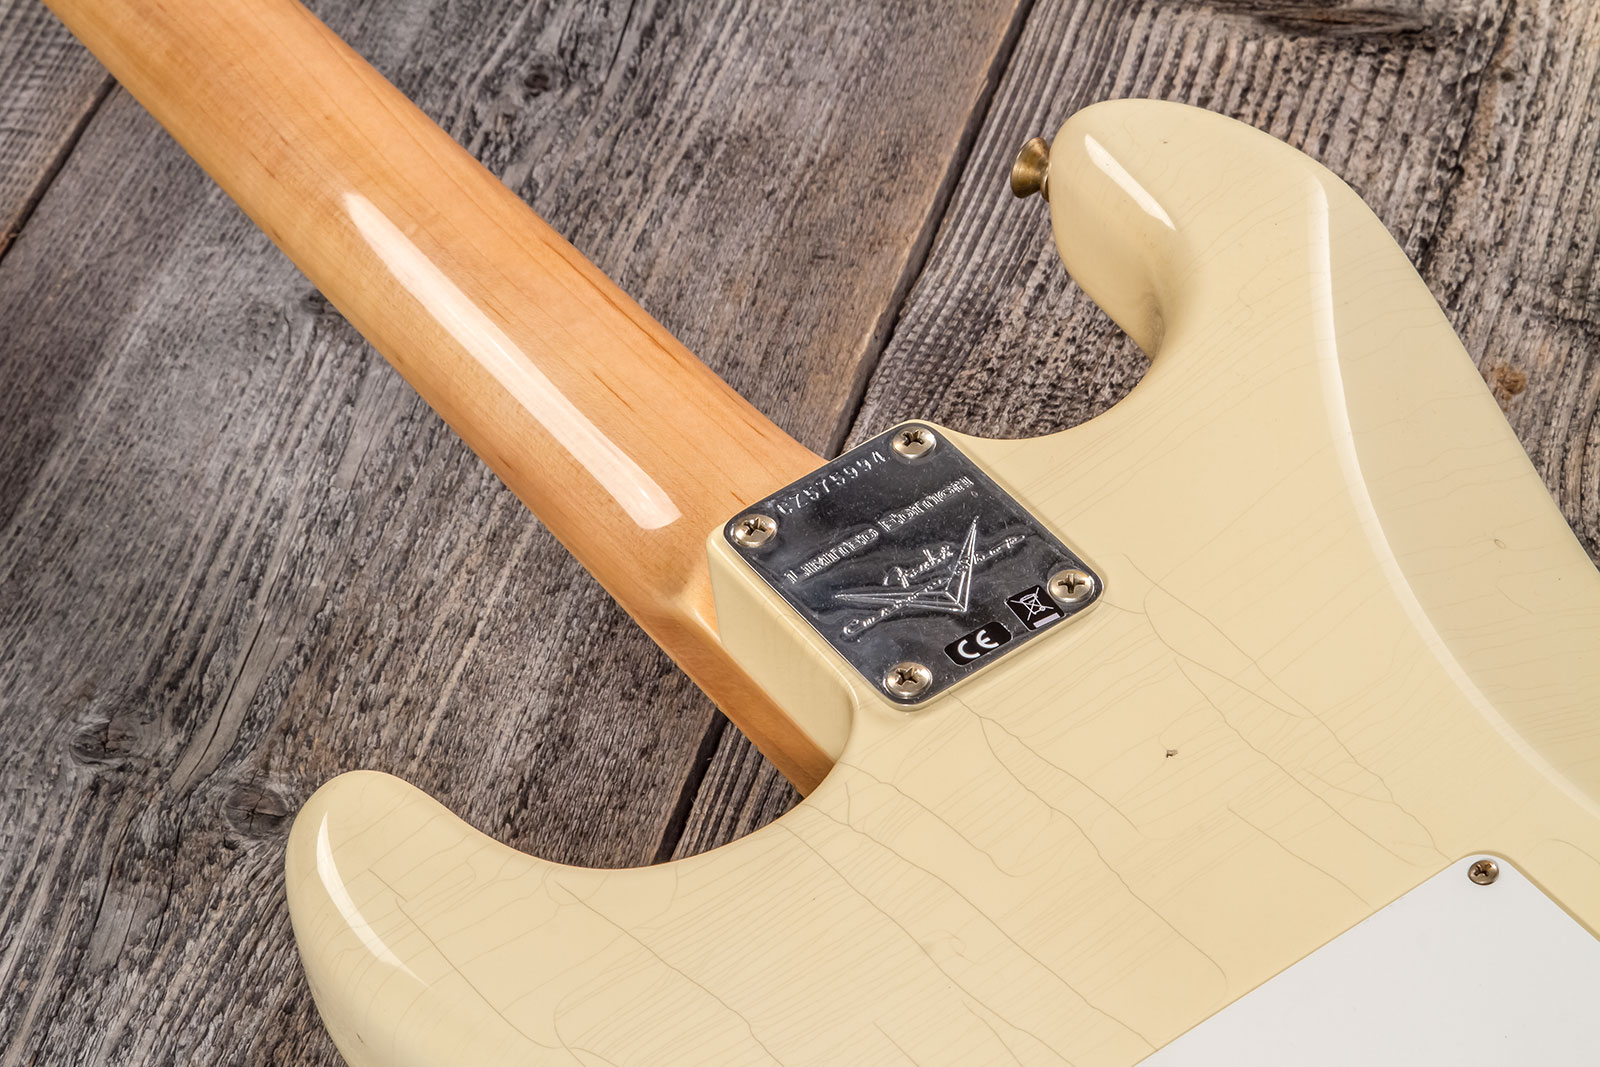 Fender Custom Shop Strat 1969 3s Trem Mn #cz576216 - Journeyman Relic Aged Vintage White - Str shape electric guitar - Variation 6